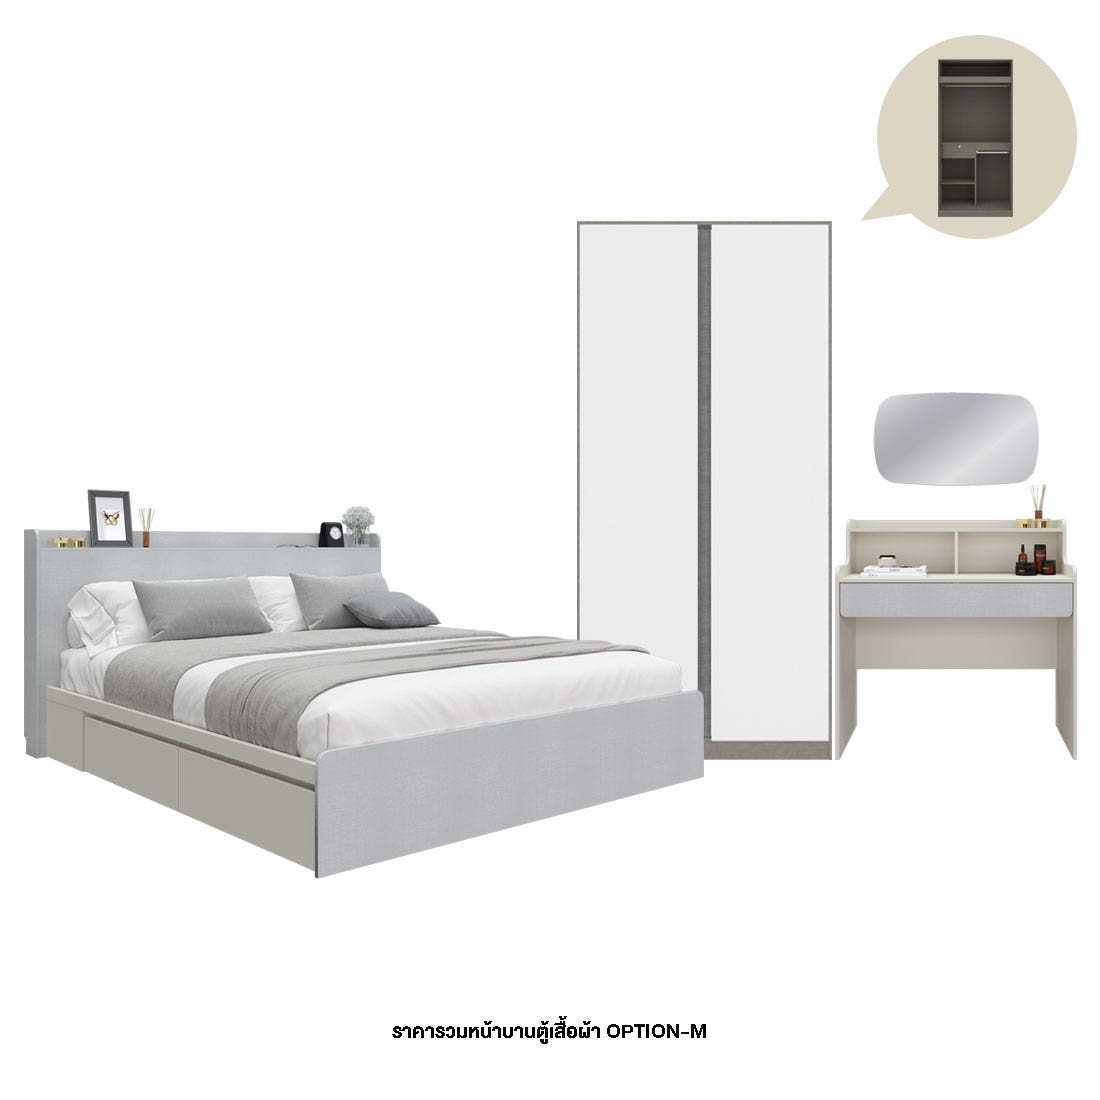 ชุดห้องนอน 5 ฟุต & ตู้ Blox Option M  100 ซม. & โต๊ะเครื่องแป้ง และกระจกรุ่น Aiko สีขาว01